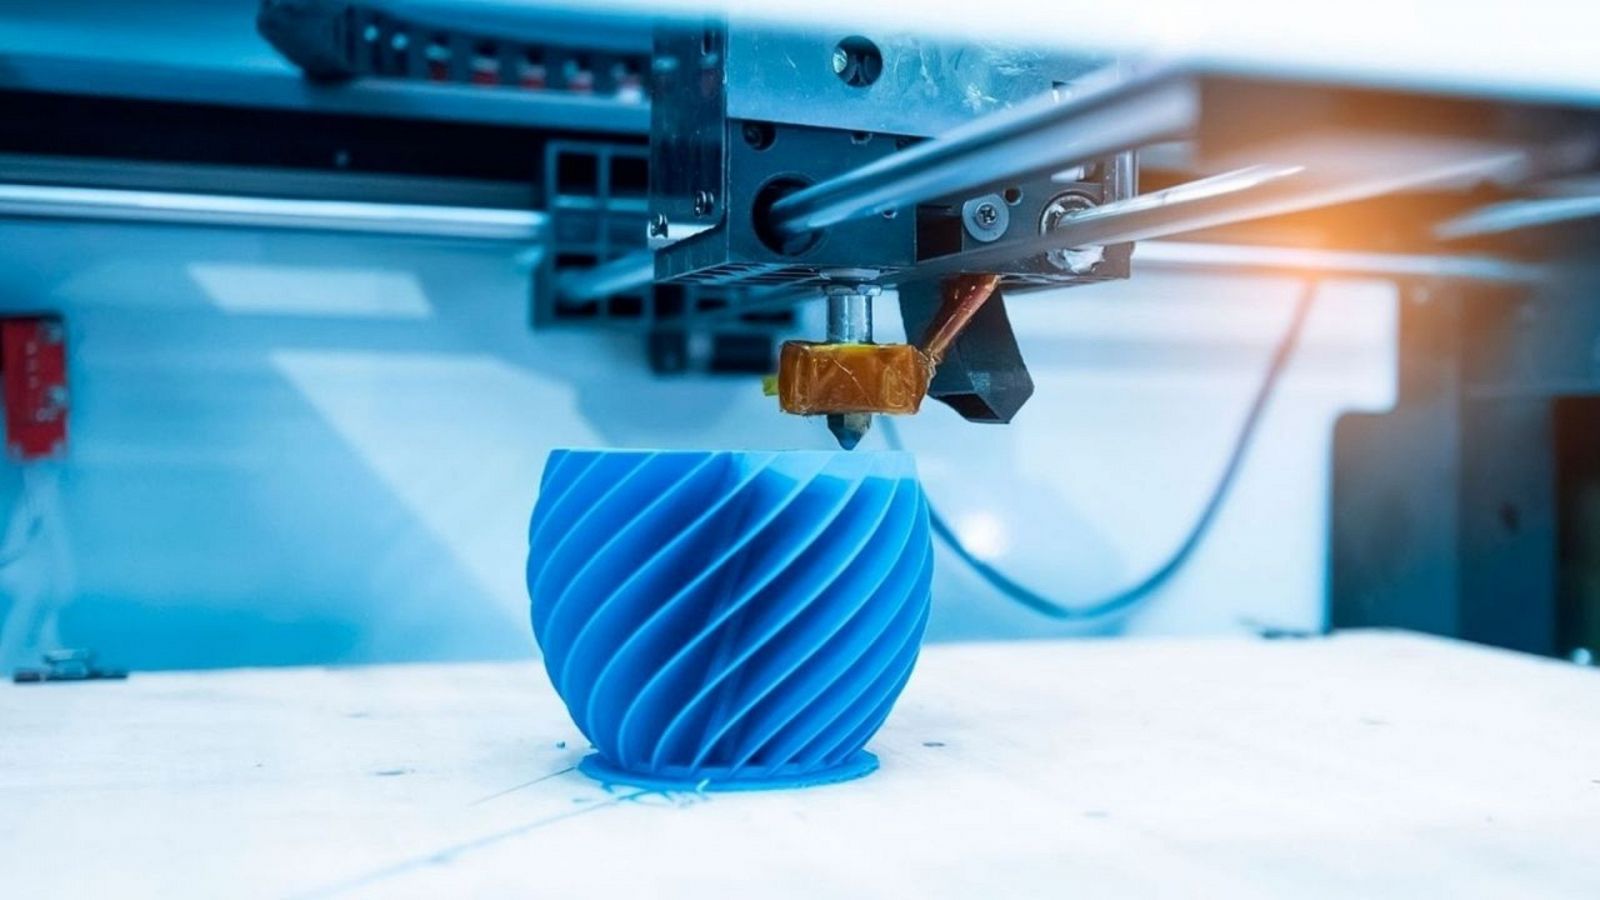 La revolución de la impresión en 3D